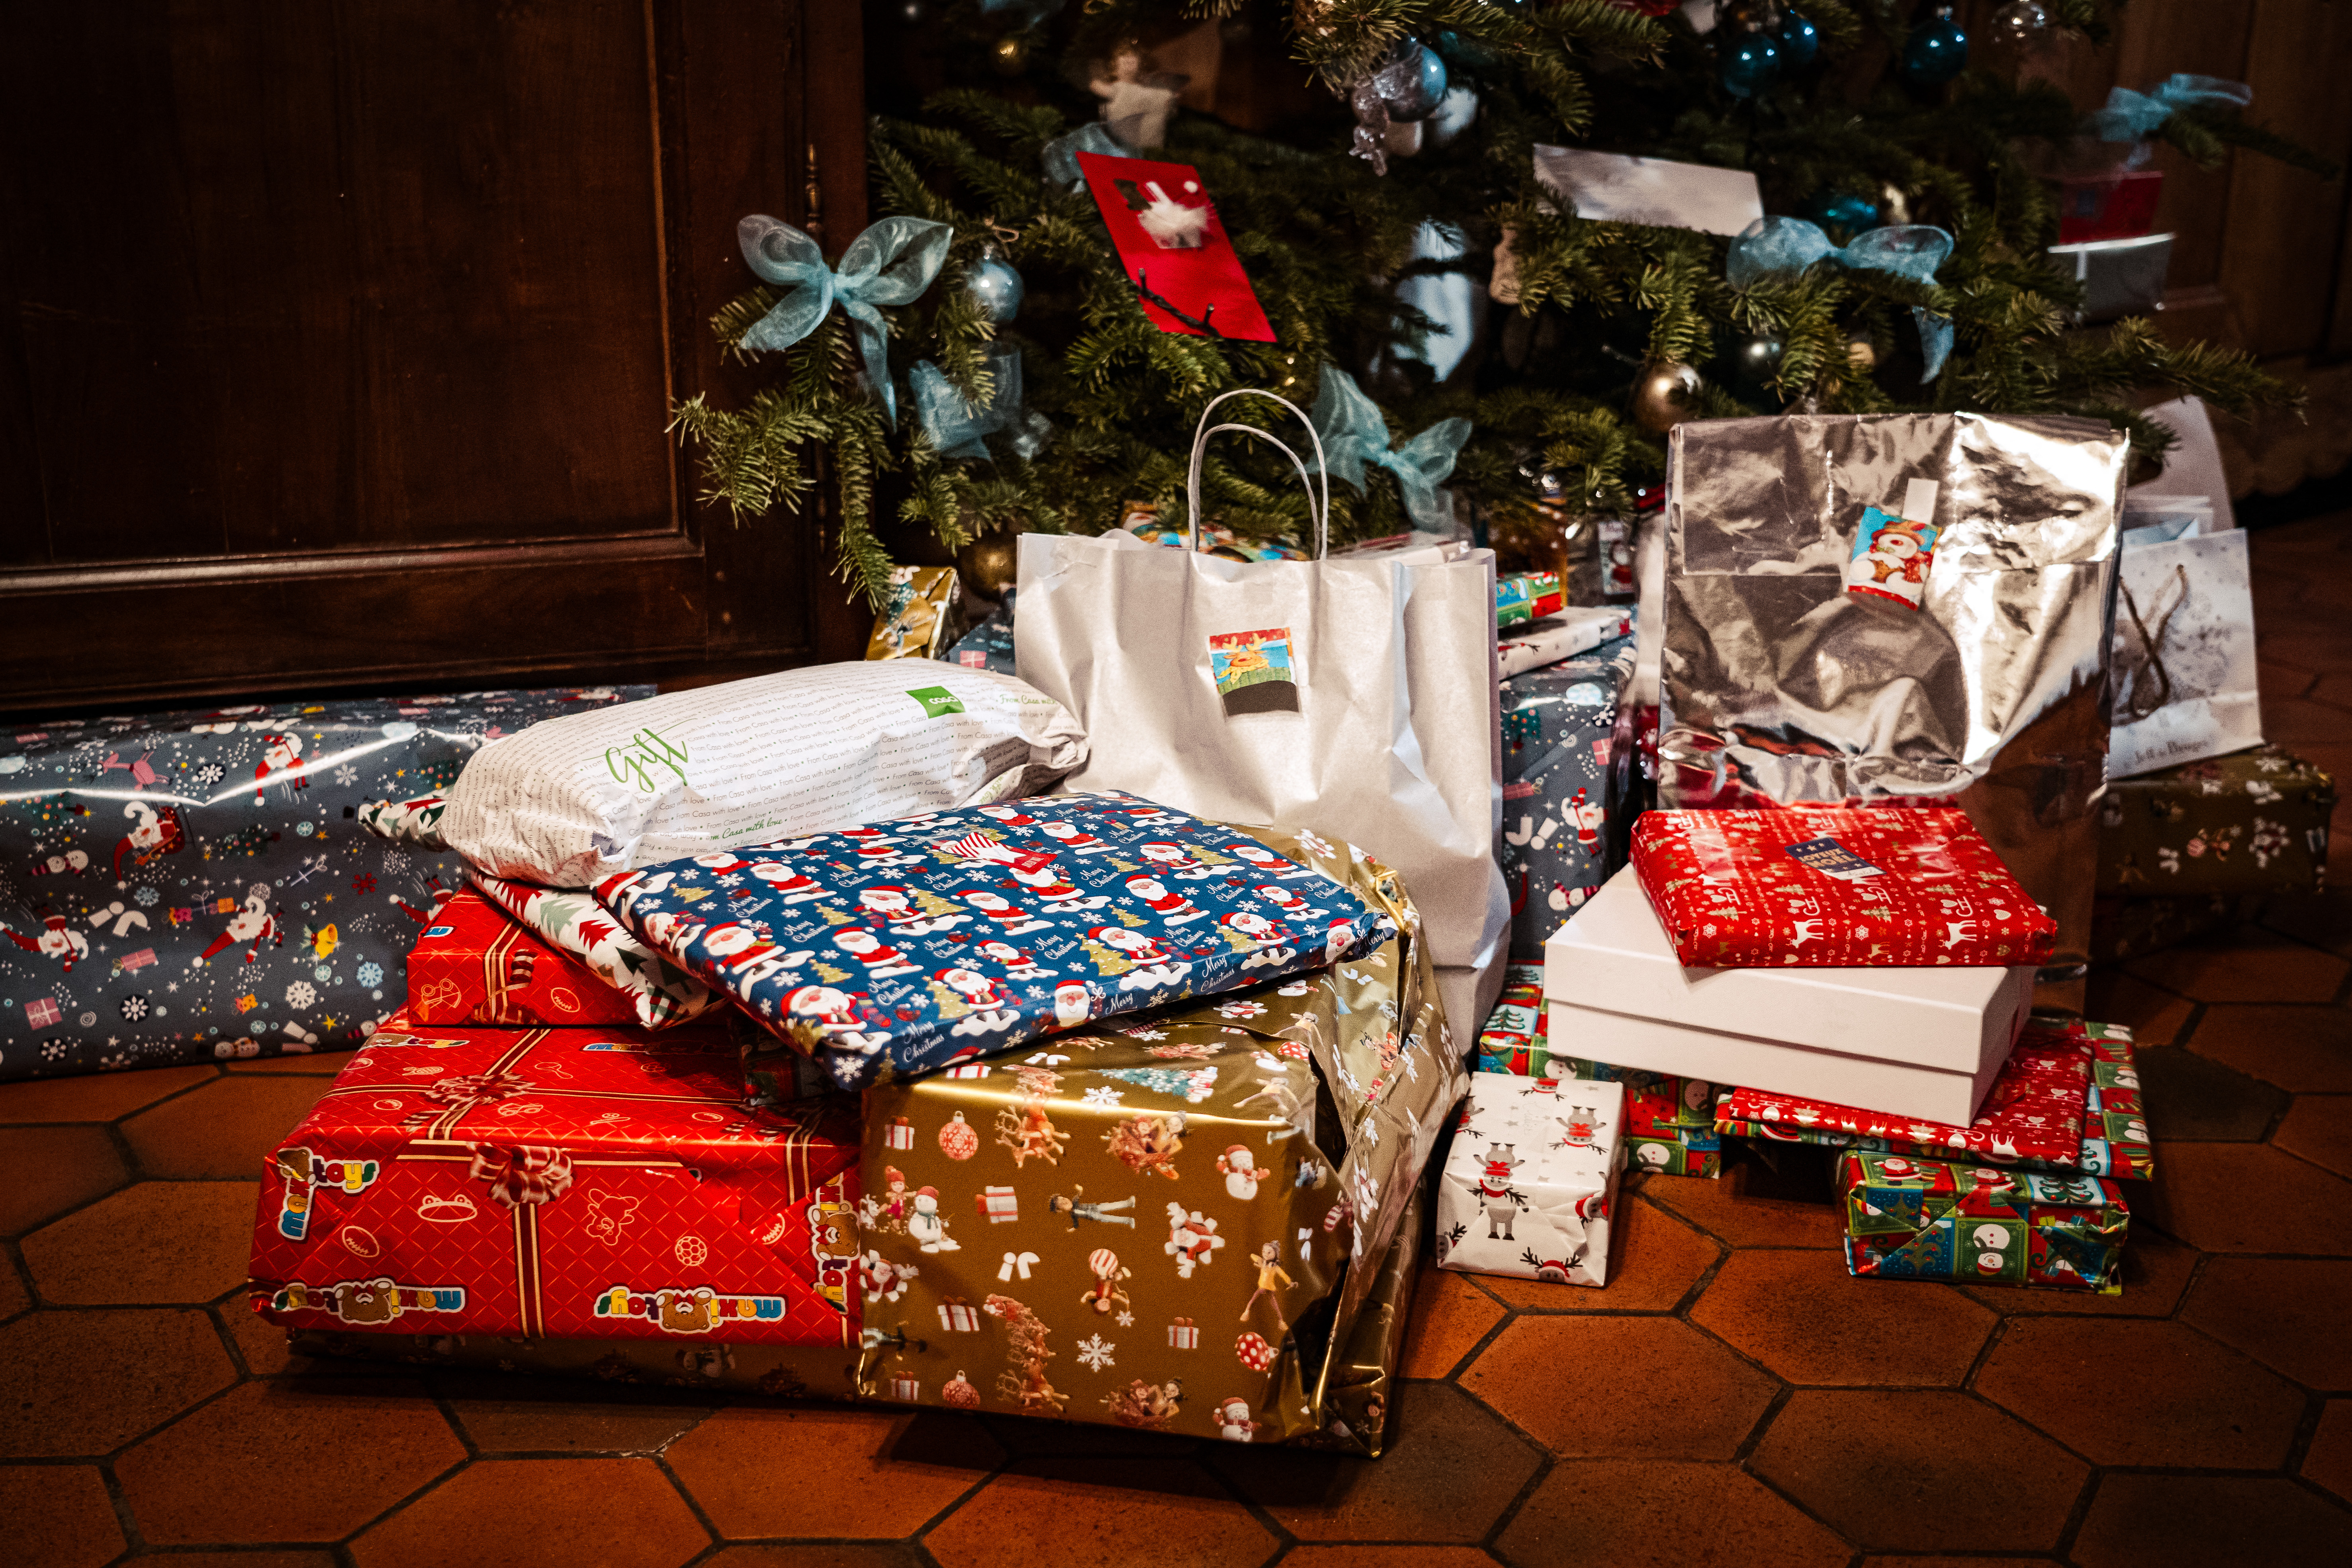 Les cadeaux de Noël à peine déballés, les annonces fleurissent sur les  sites de revente en ligne - France Bleu